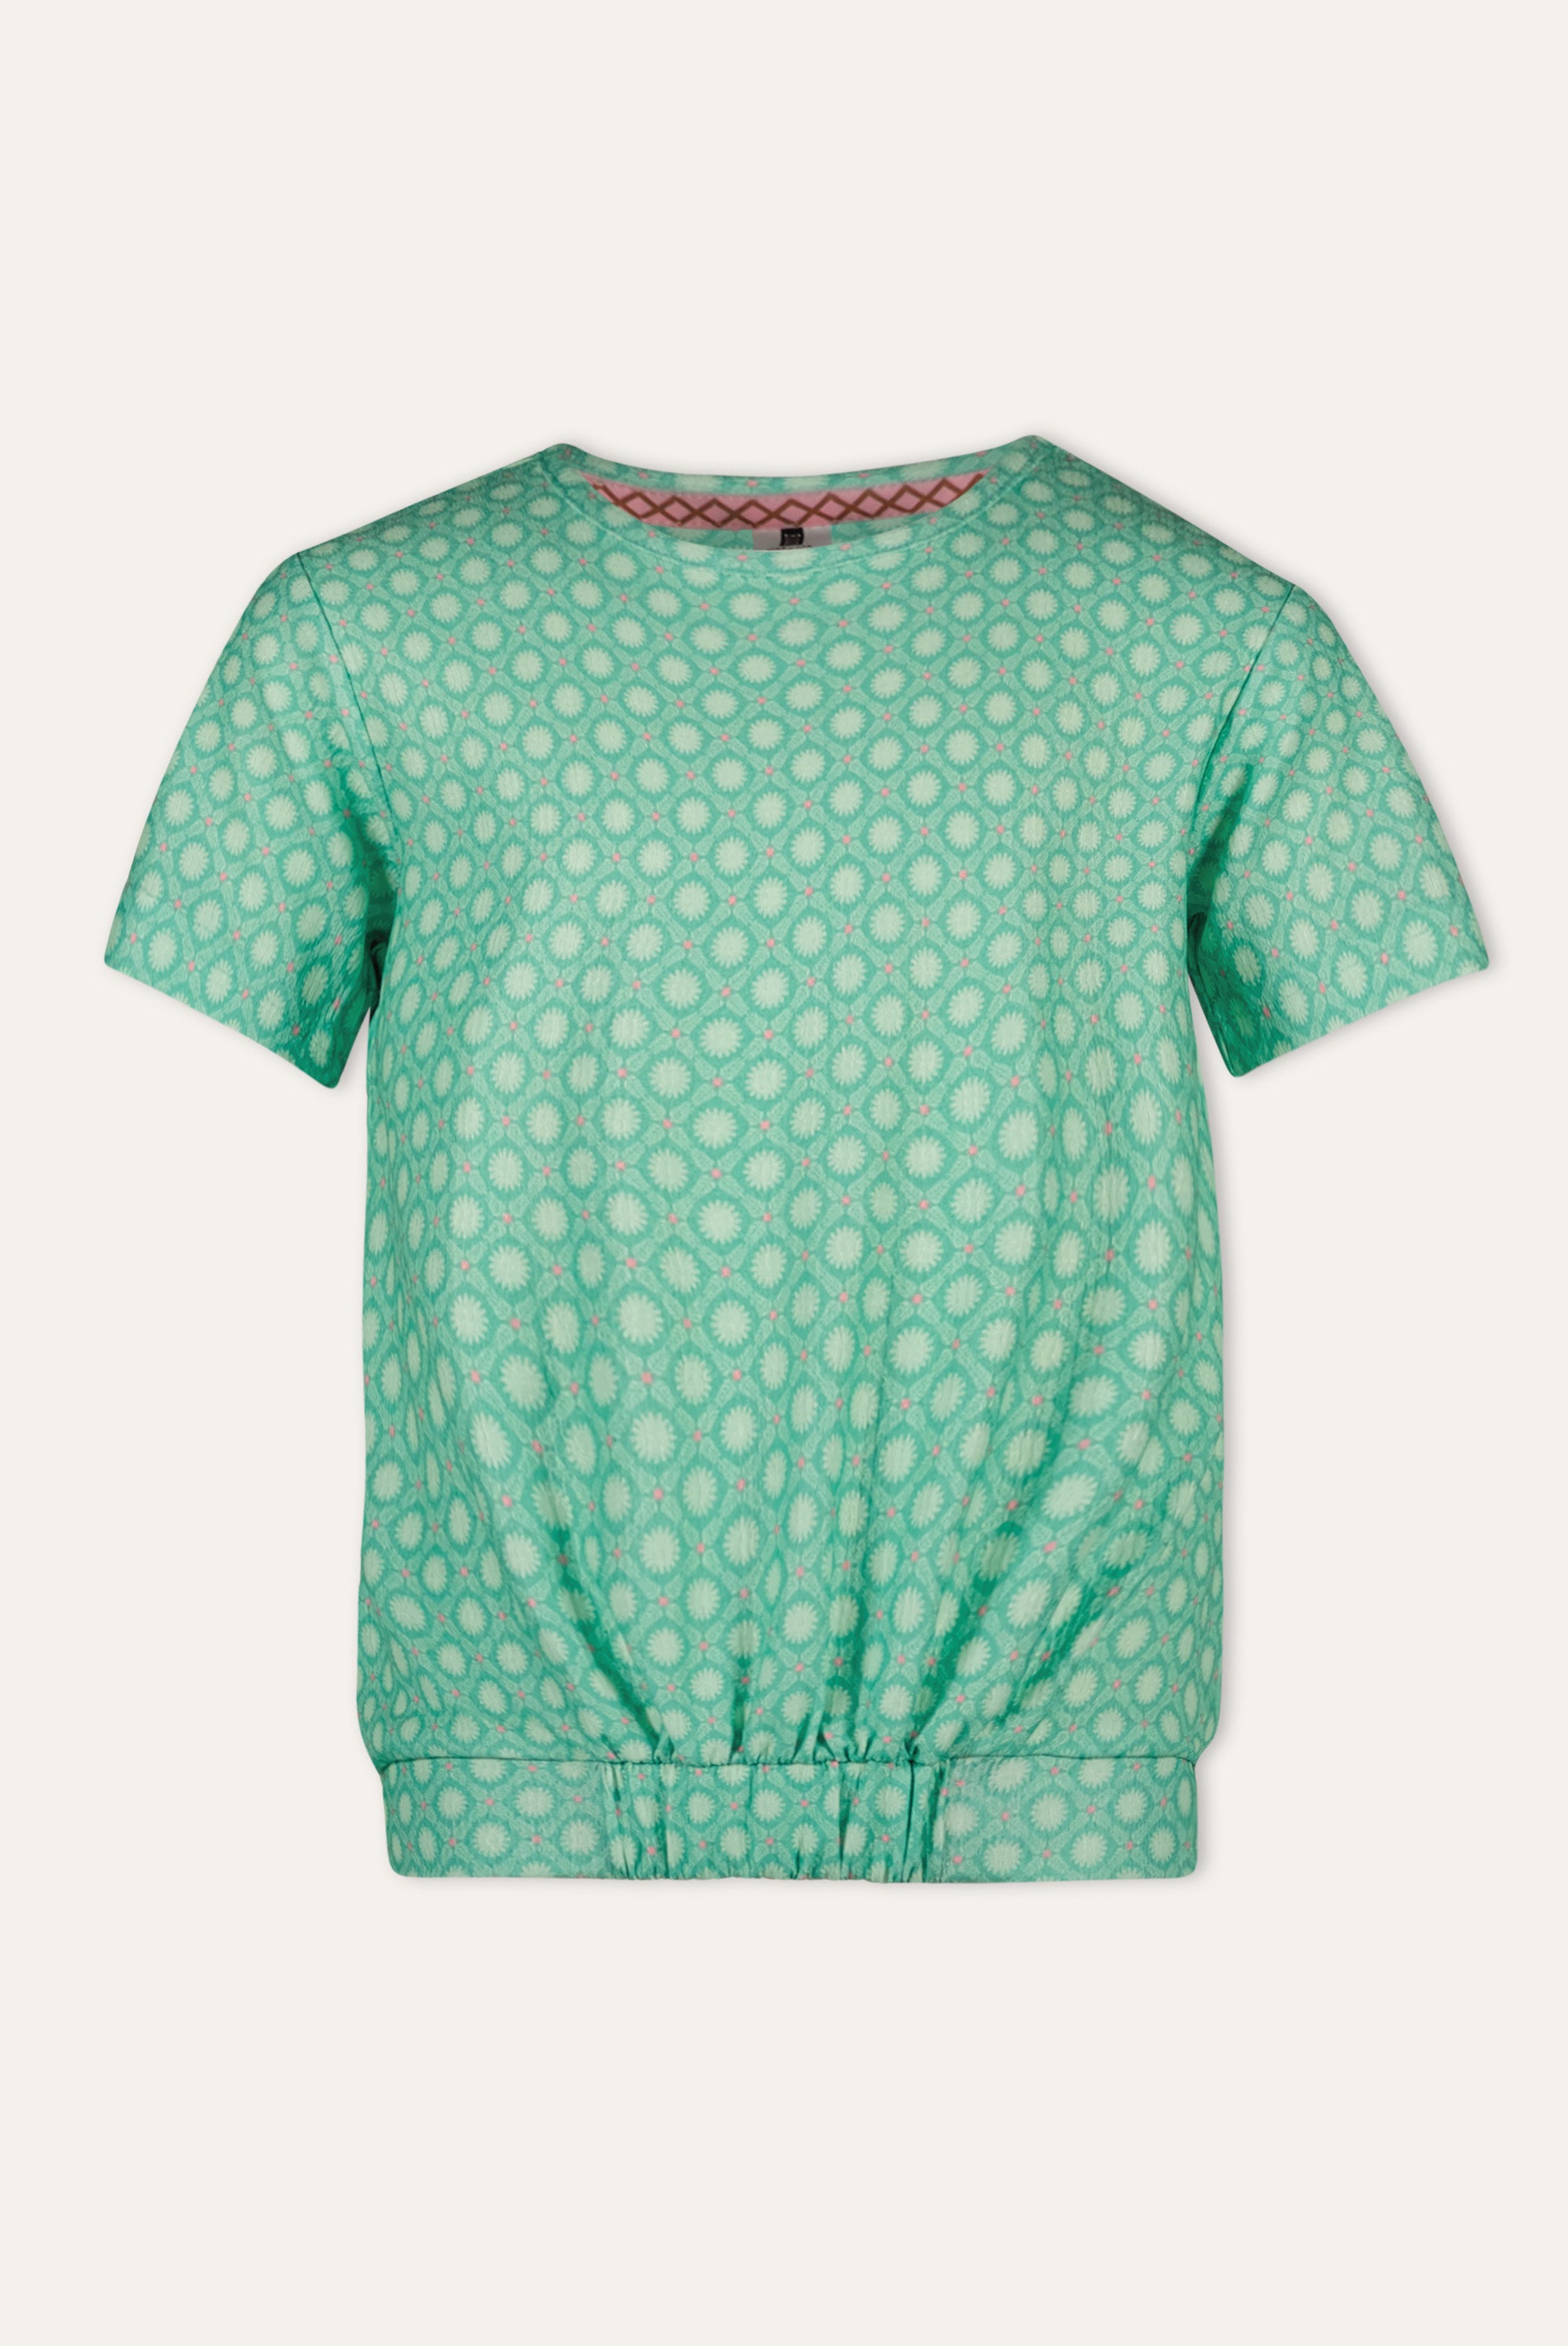 EMILY t-shirt groen